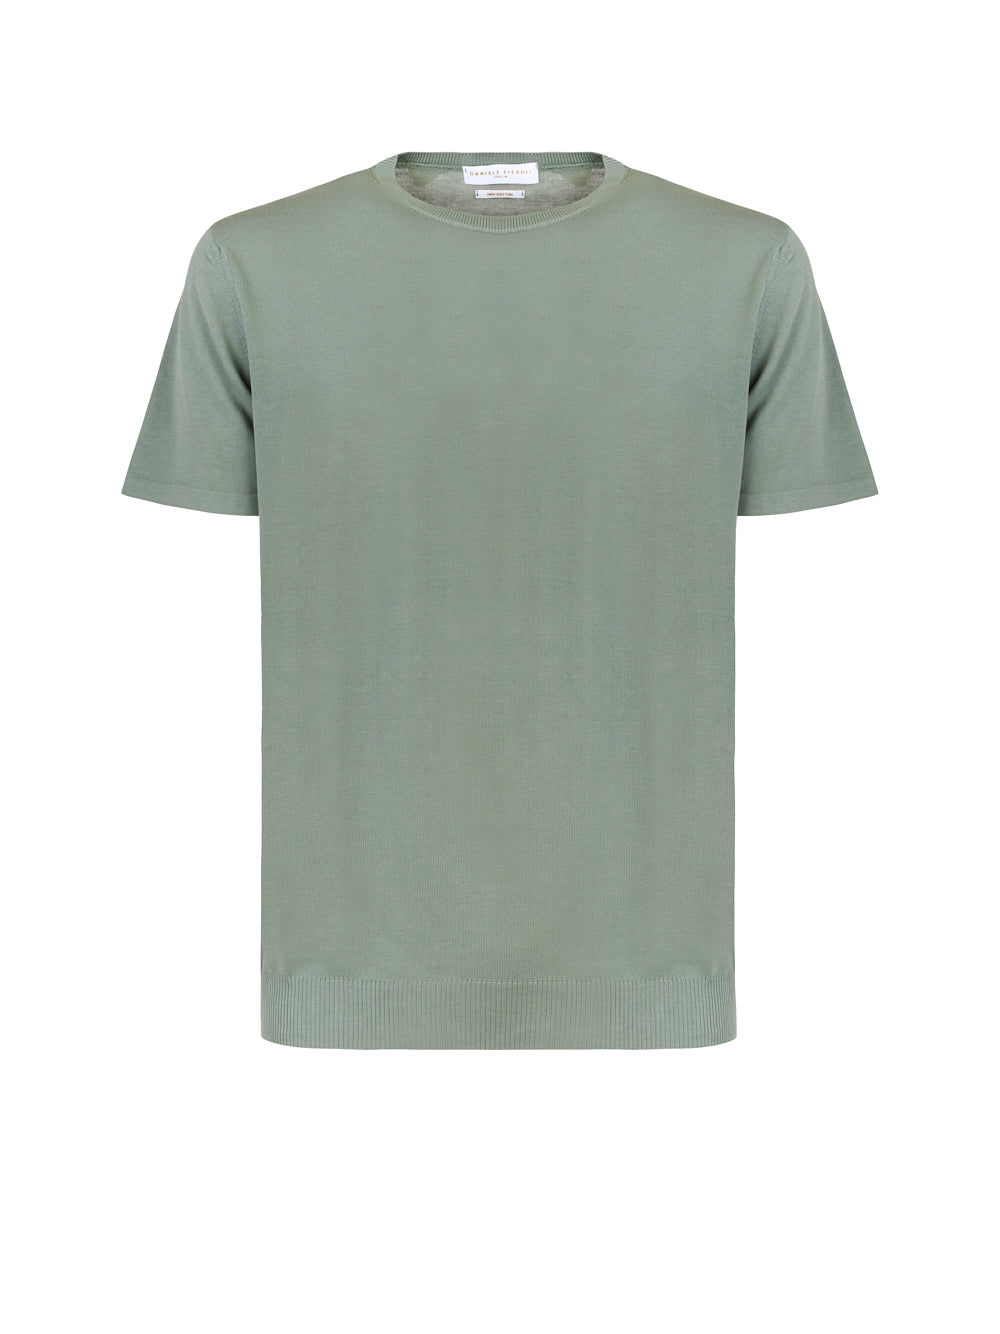 T-shirt DANIELE FIESOLI Mezza manica
Verde militare